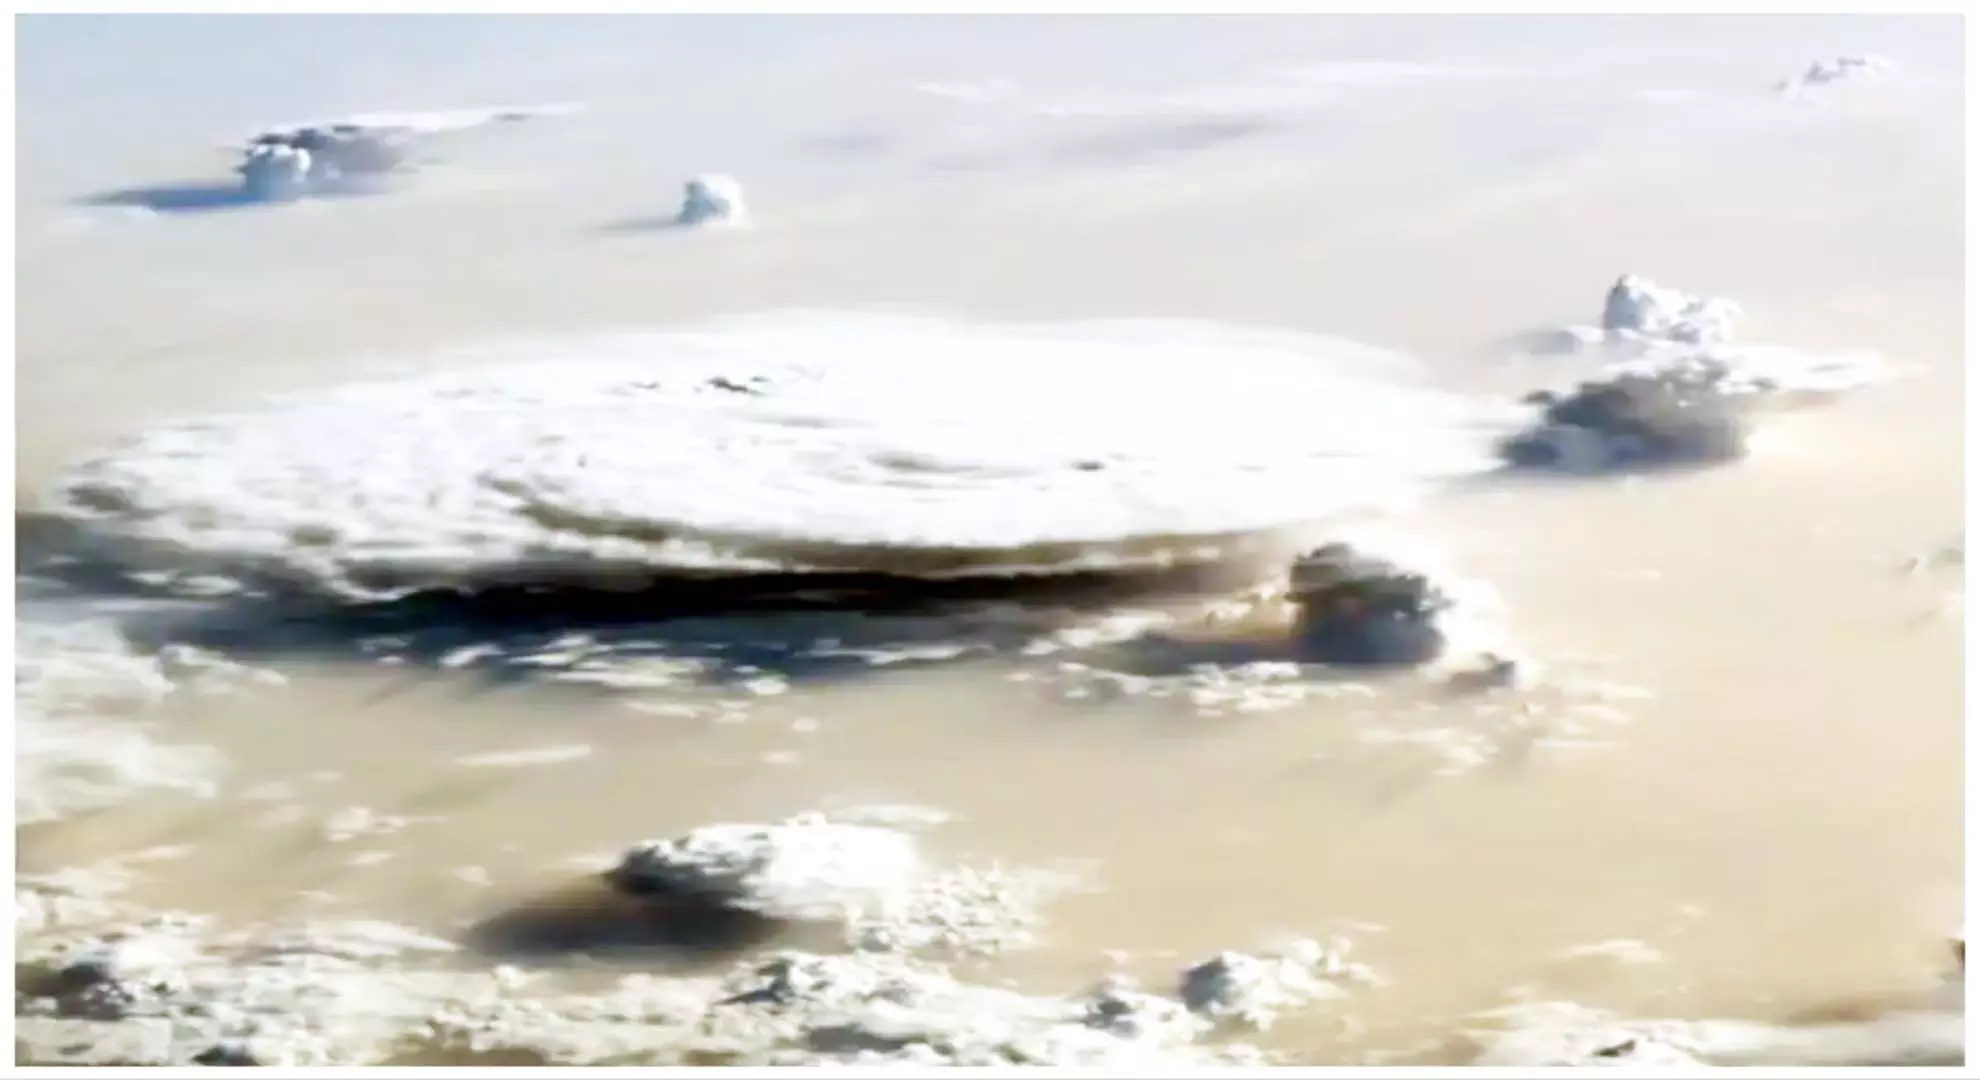 नासा के वीडियो में अंतरिक्ष से सहारा रेगिस्तान का आश्चर्यजनक दृश्य कैद हुआ